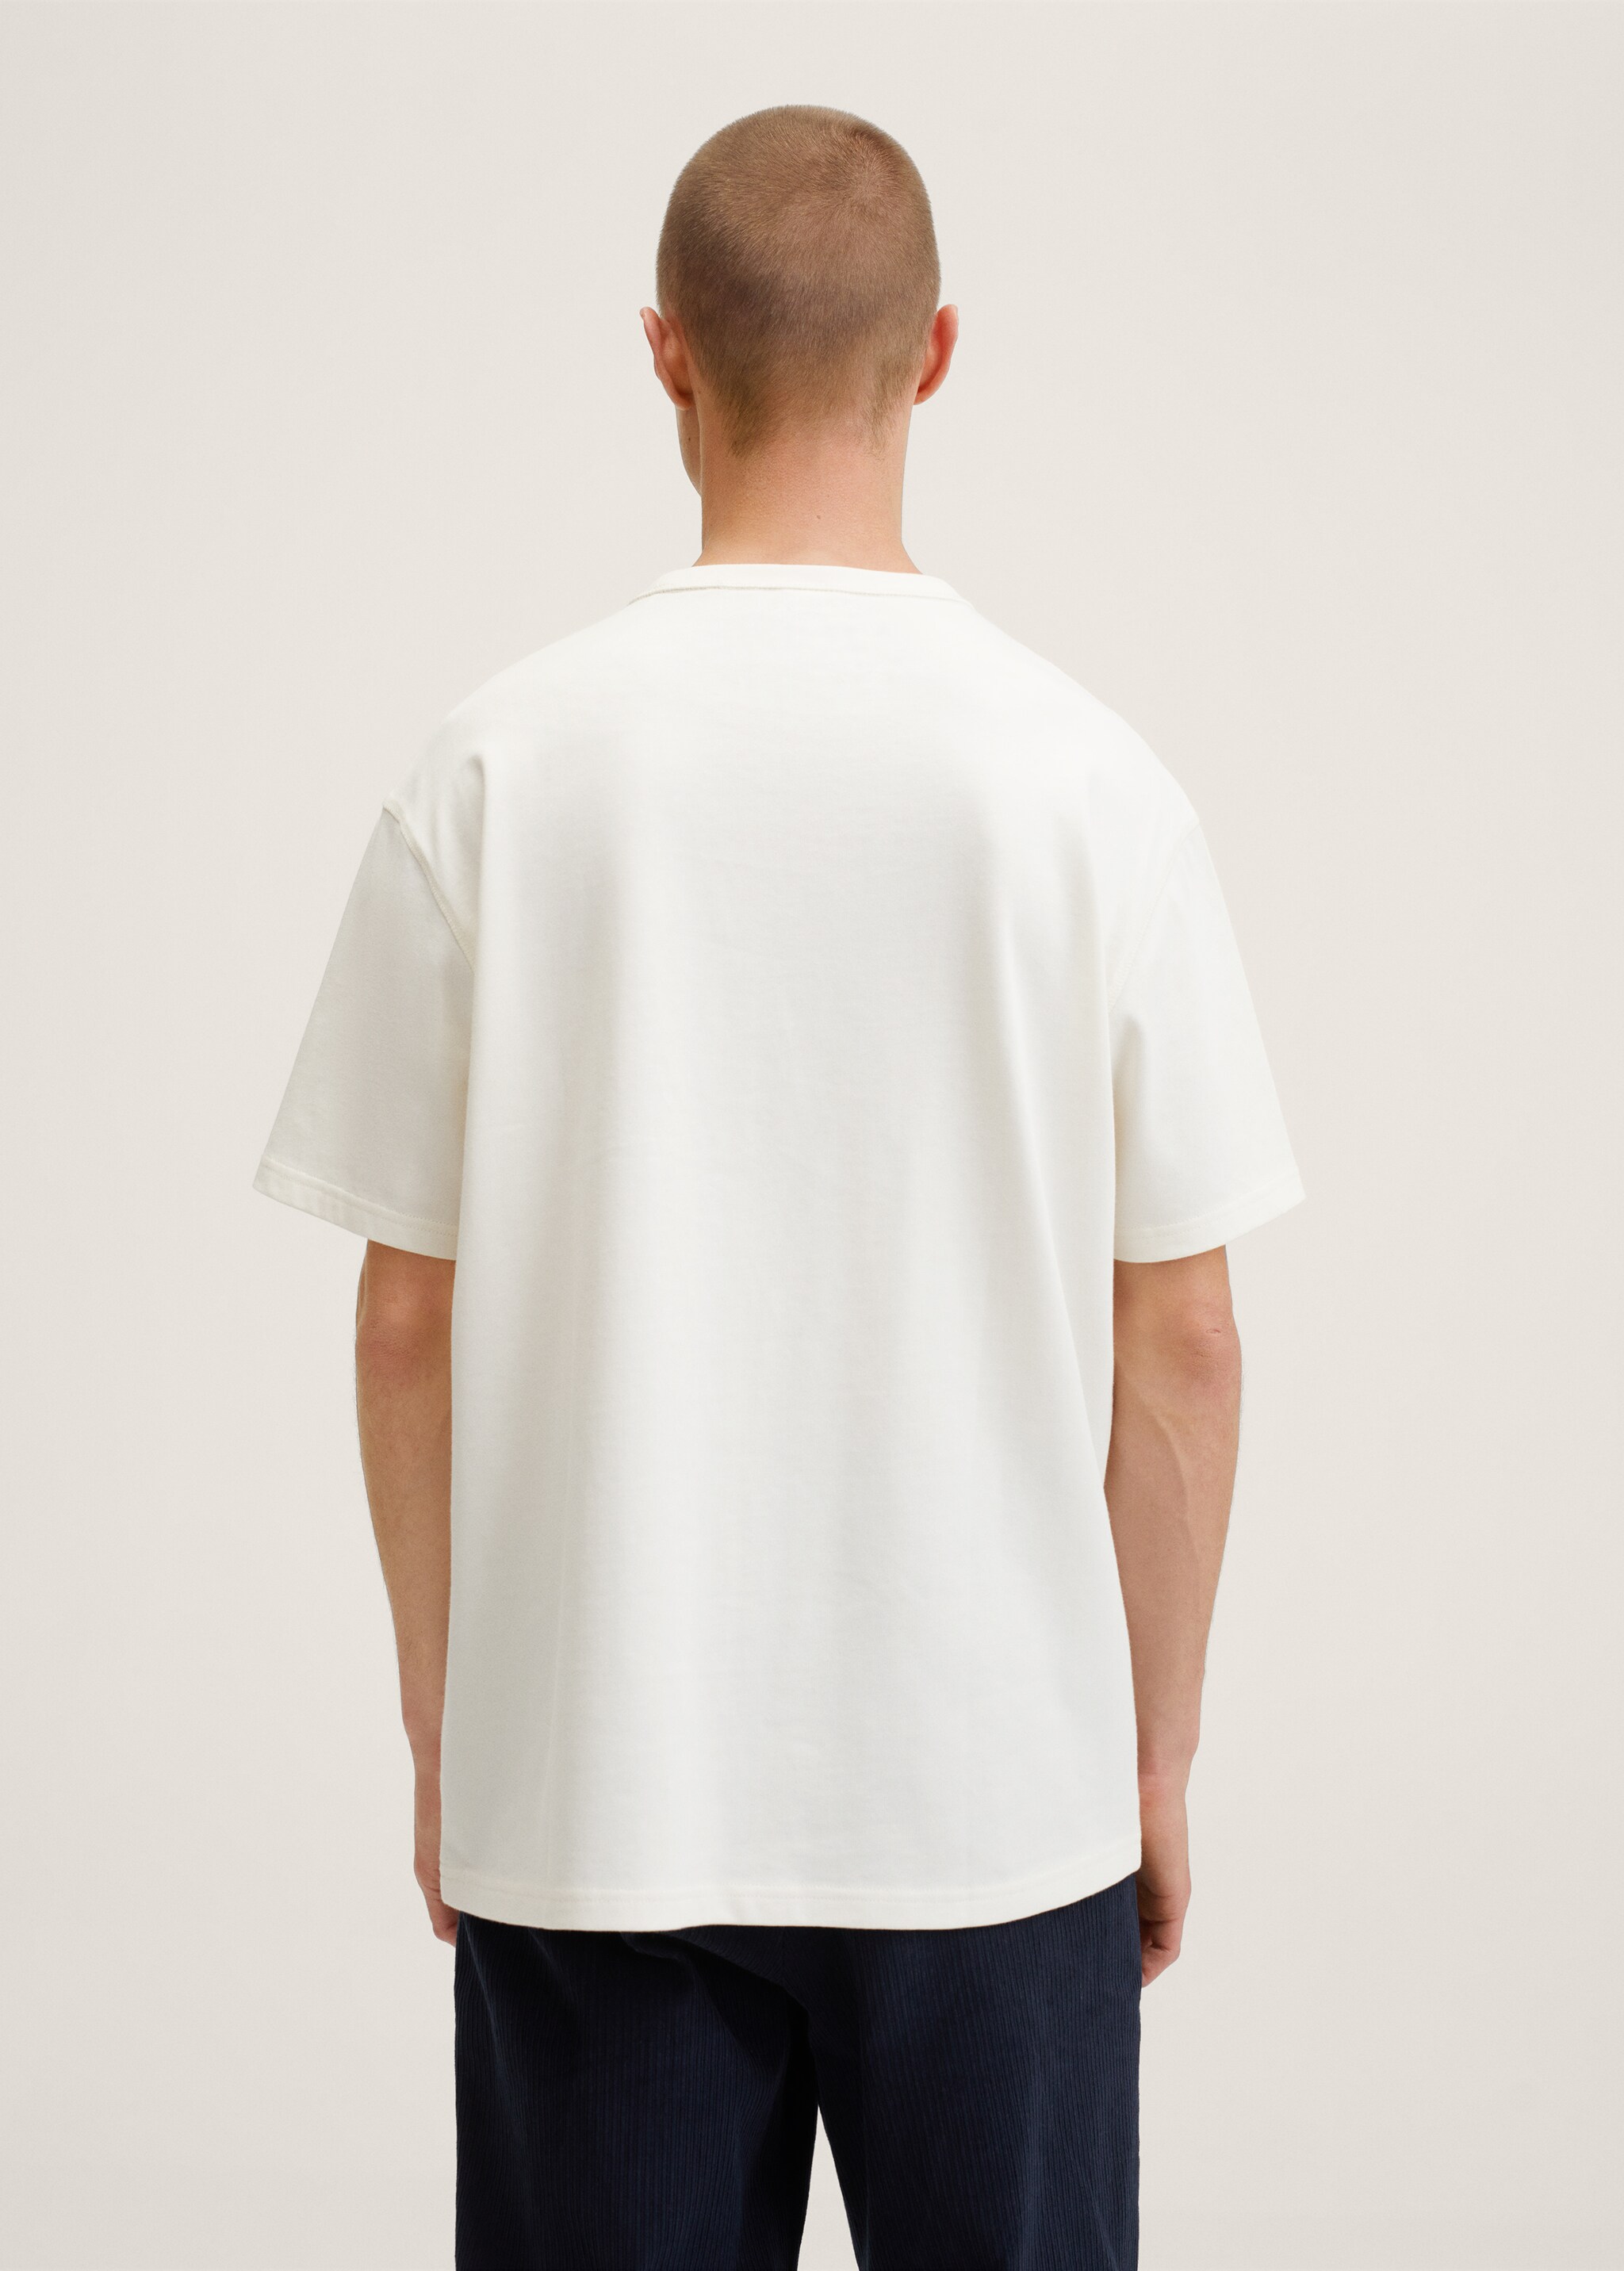 Camiseta algodón relaxed fit - Reverso del artículo